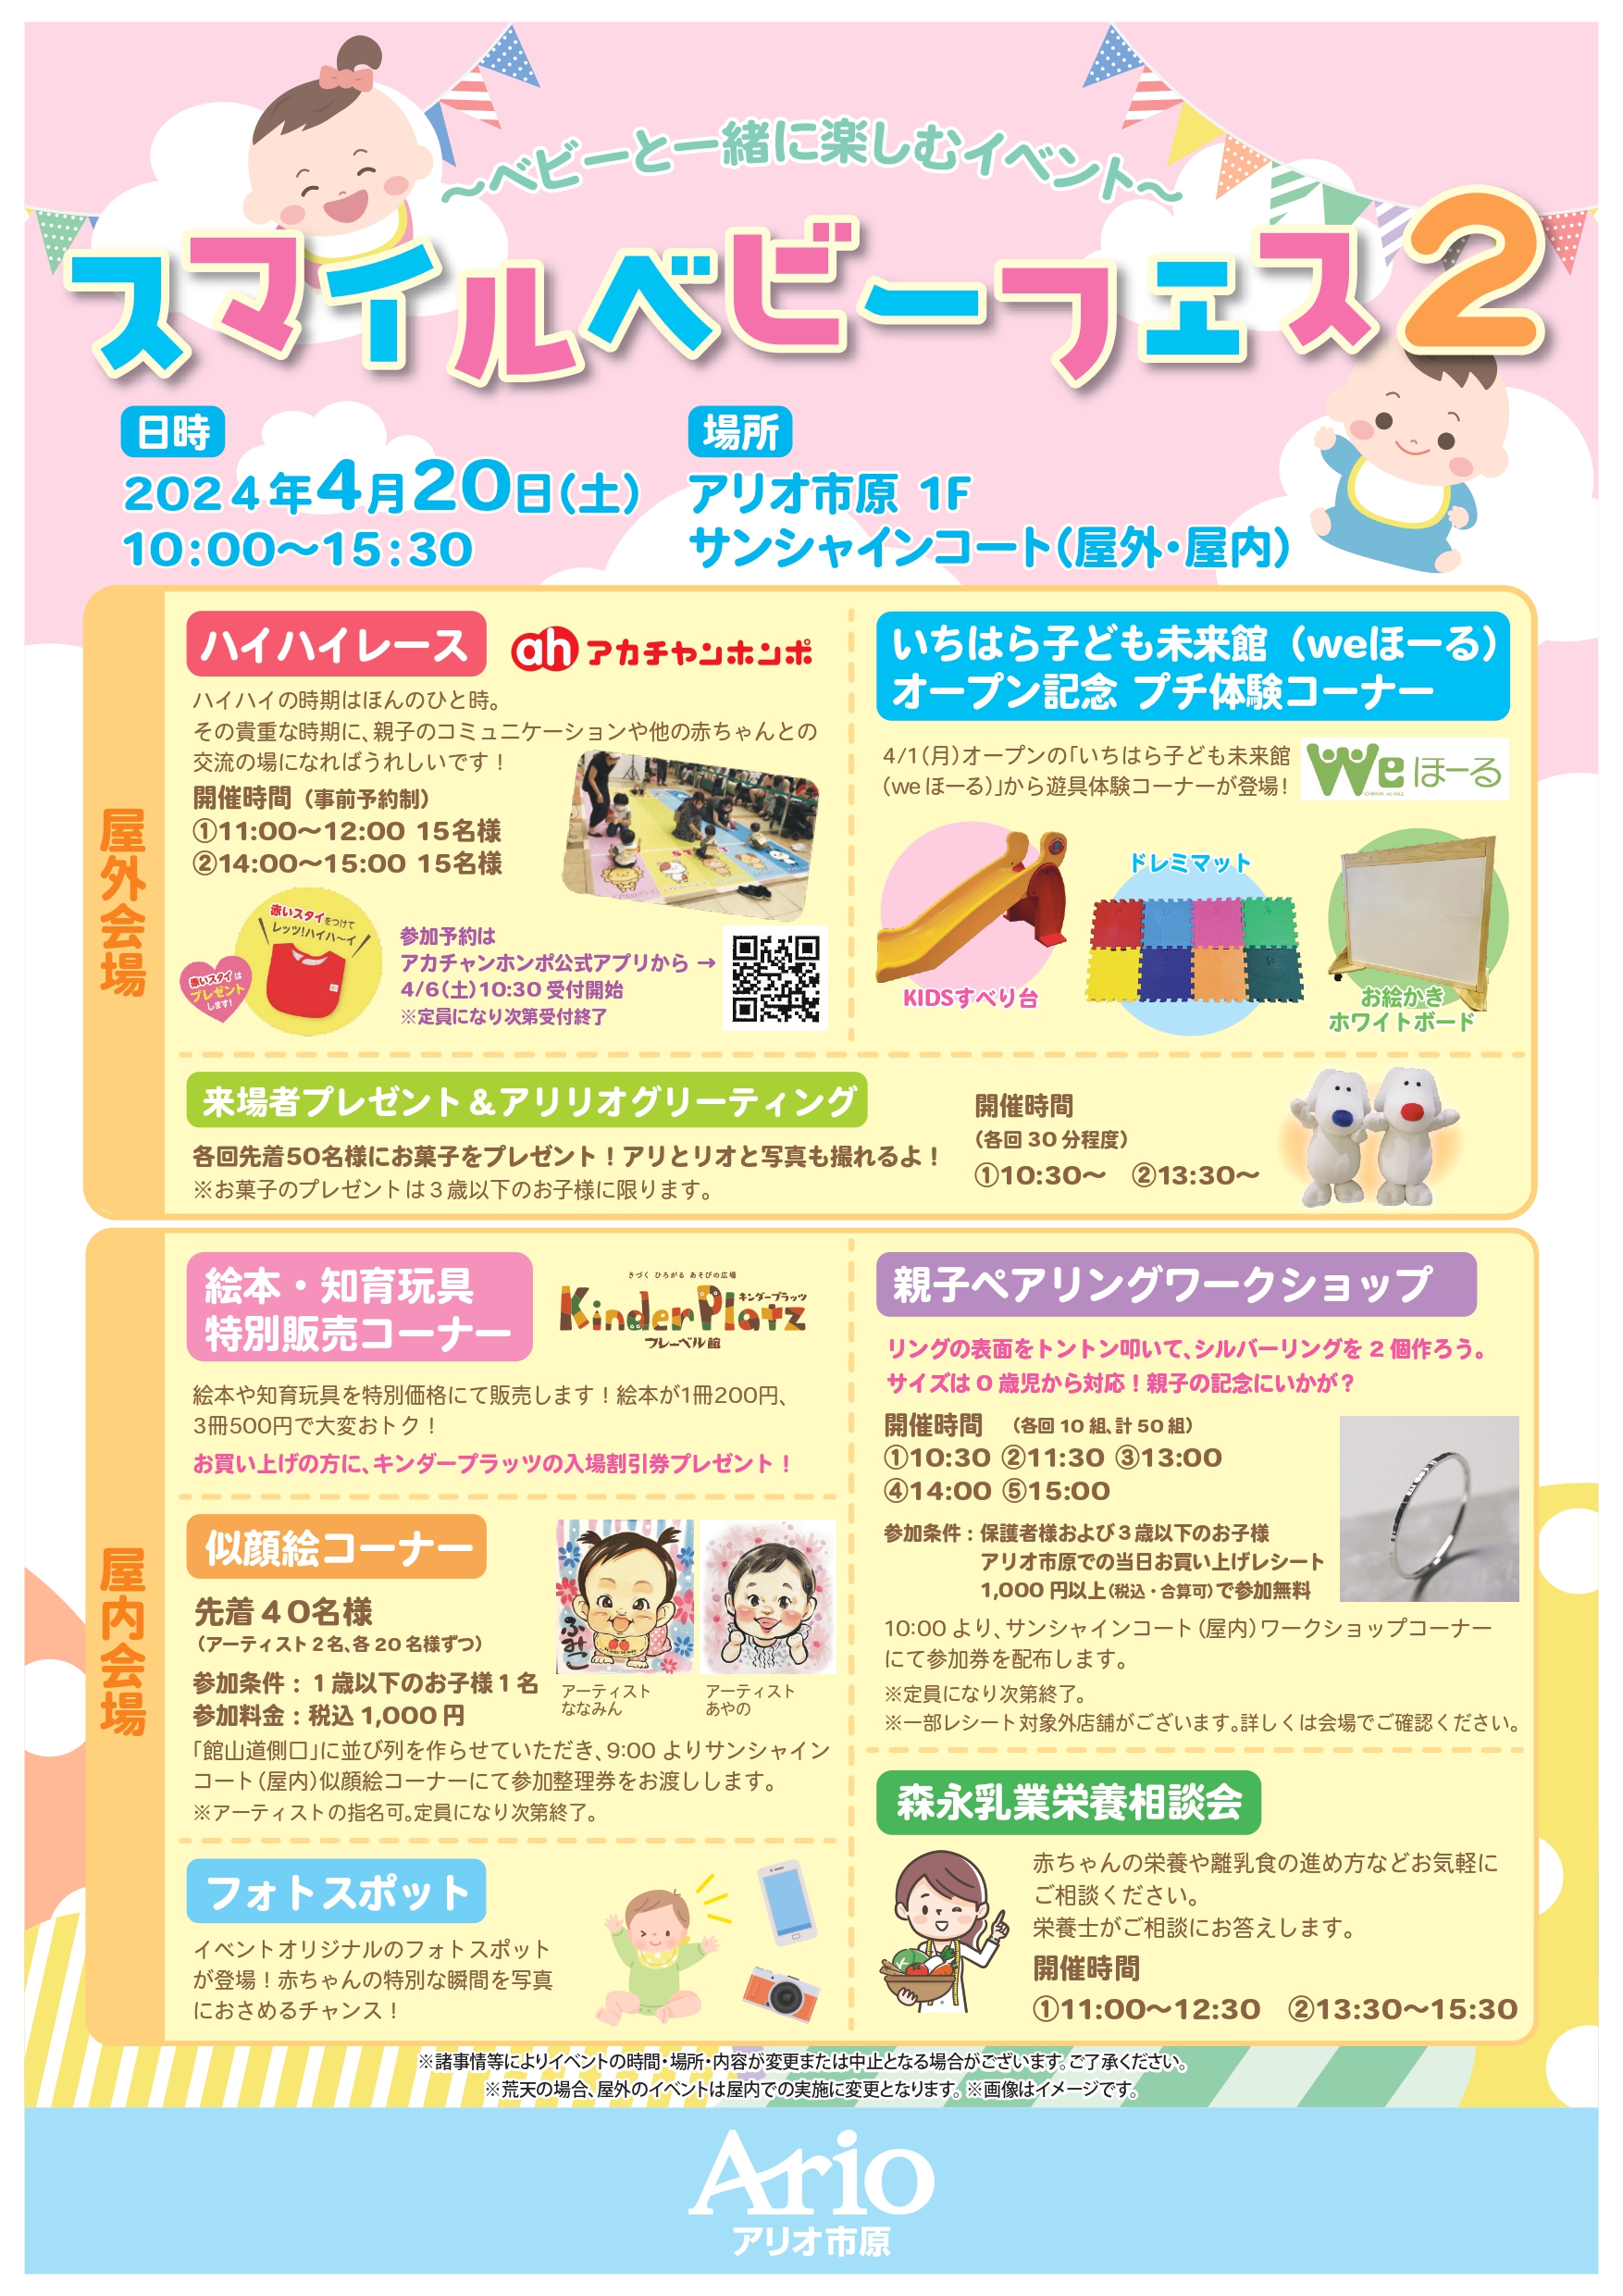 We Hole 参加 Ario Ichihara “Smile Baby Fest 2″，”纪念 Ichihara Children’s Miraikan（we Hole）开业的小型体验角”。